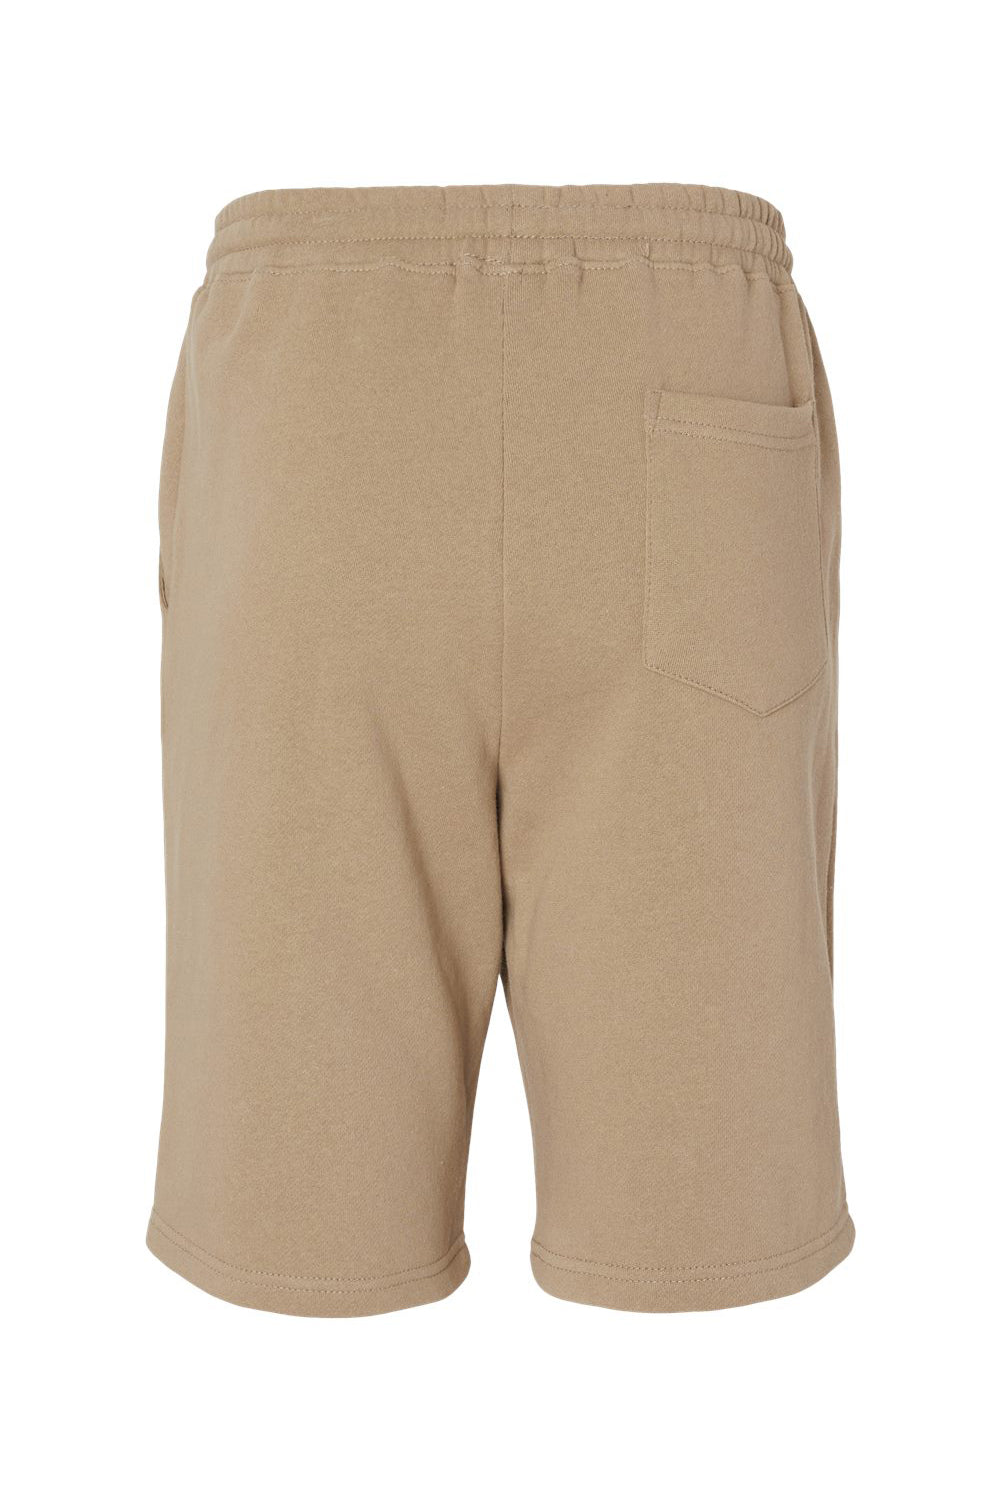 Independent Trading Co. IND20SRT Mens Fleece Shorts w/ Pockets Sandstone Brown Flat Back